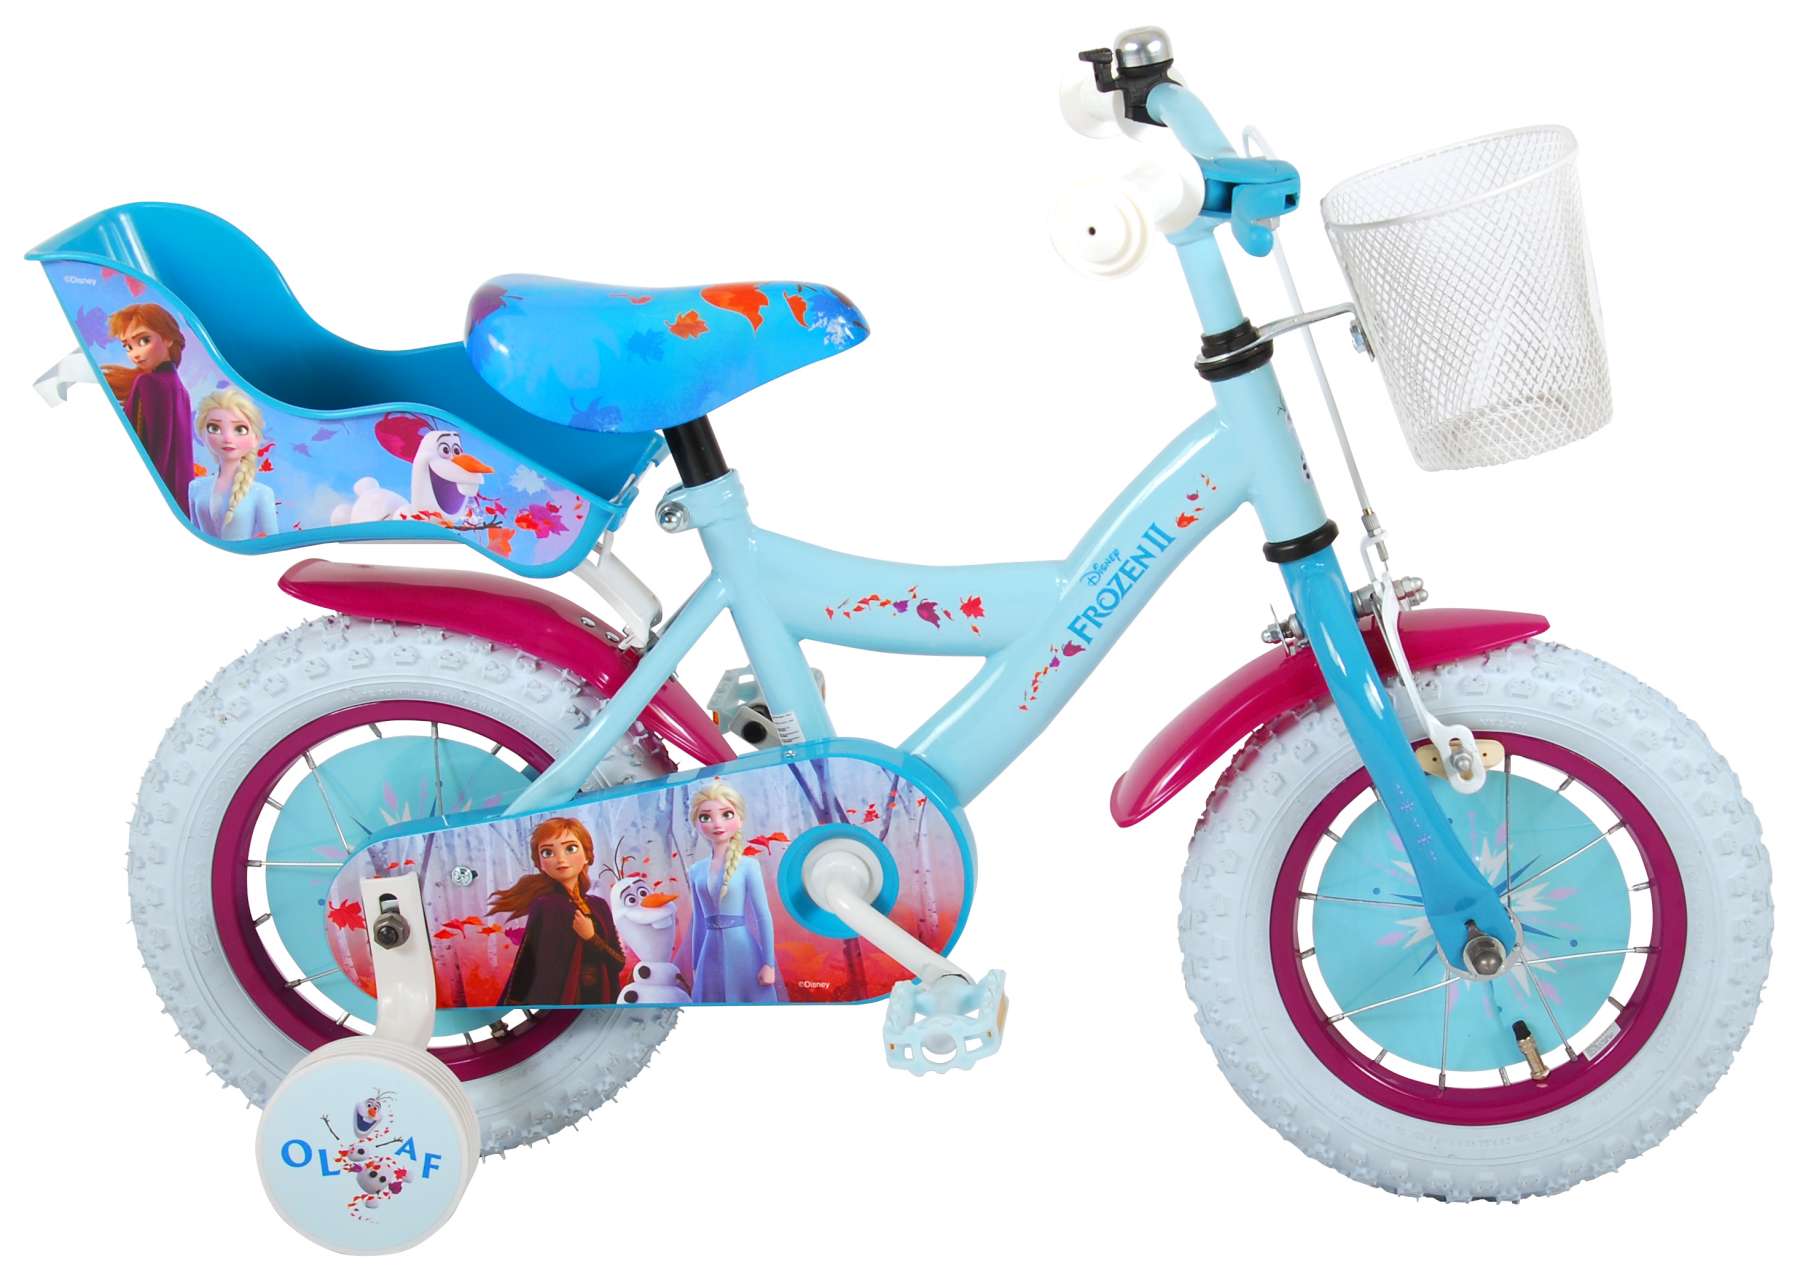 Vélo enfant Disney La reine des neiges 2 - fille - 12 po - bleu/mauve -  assemblé à 95